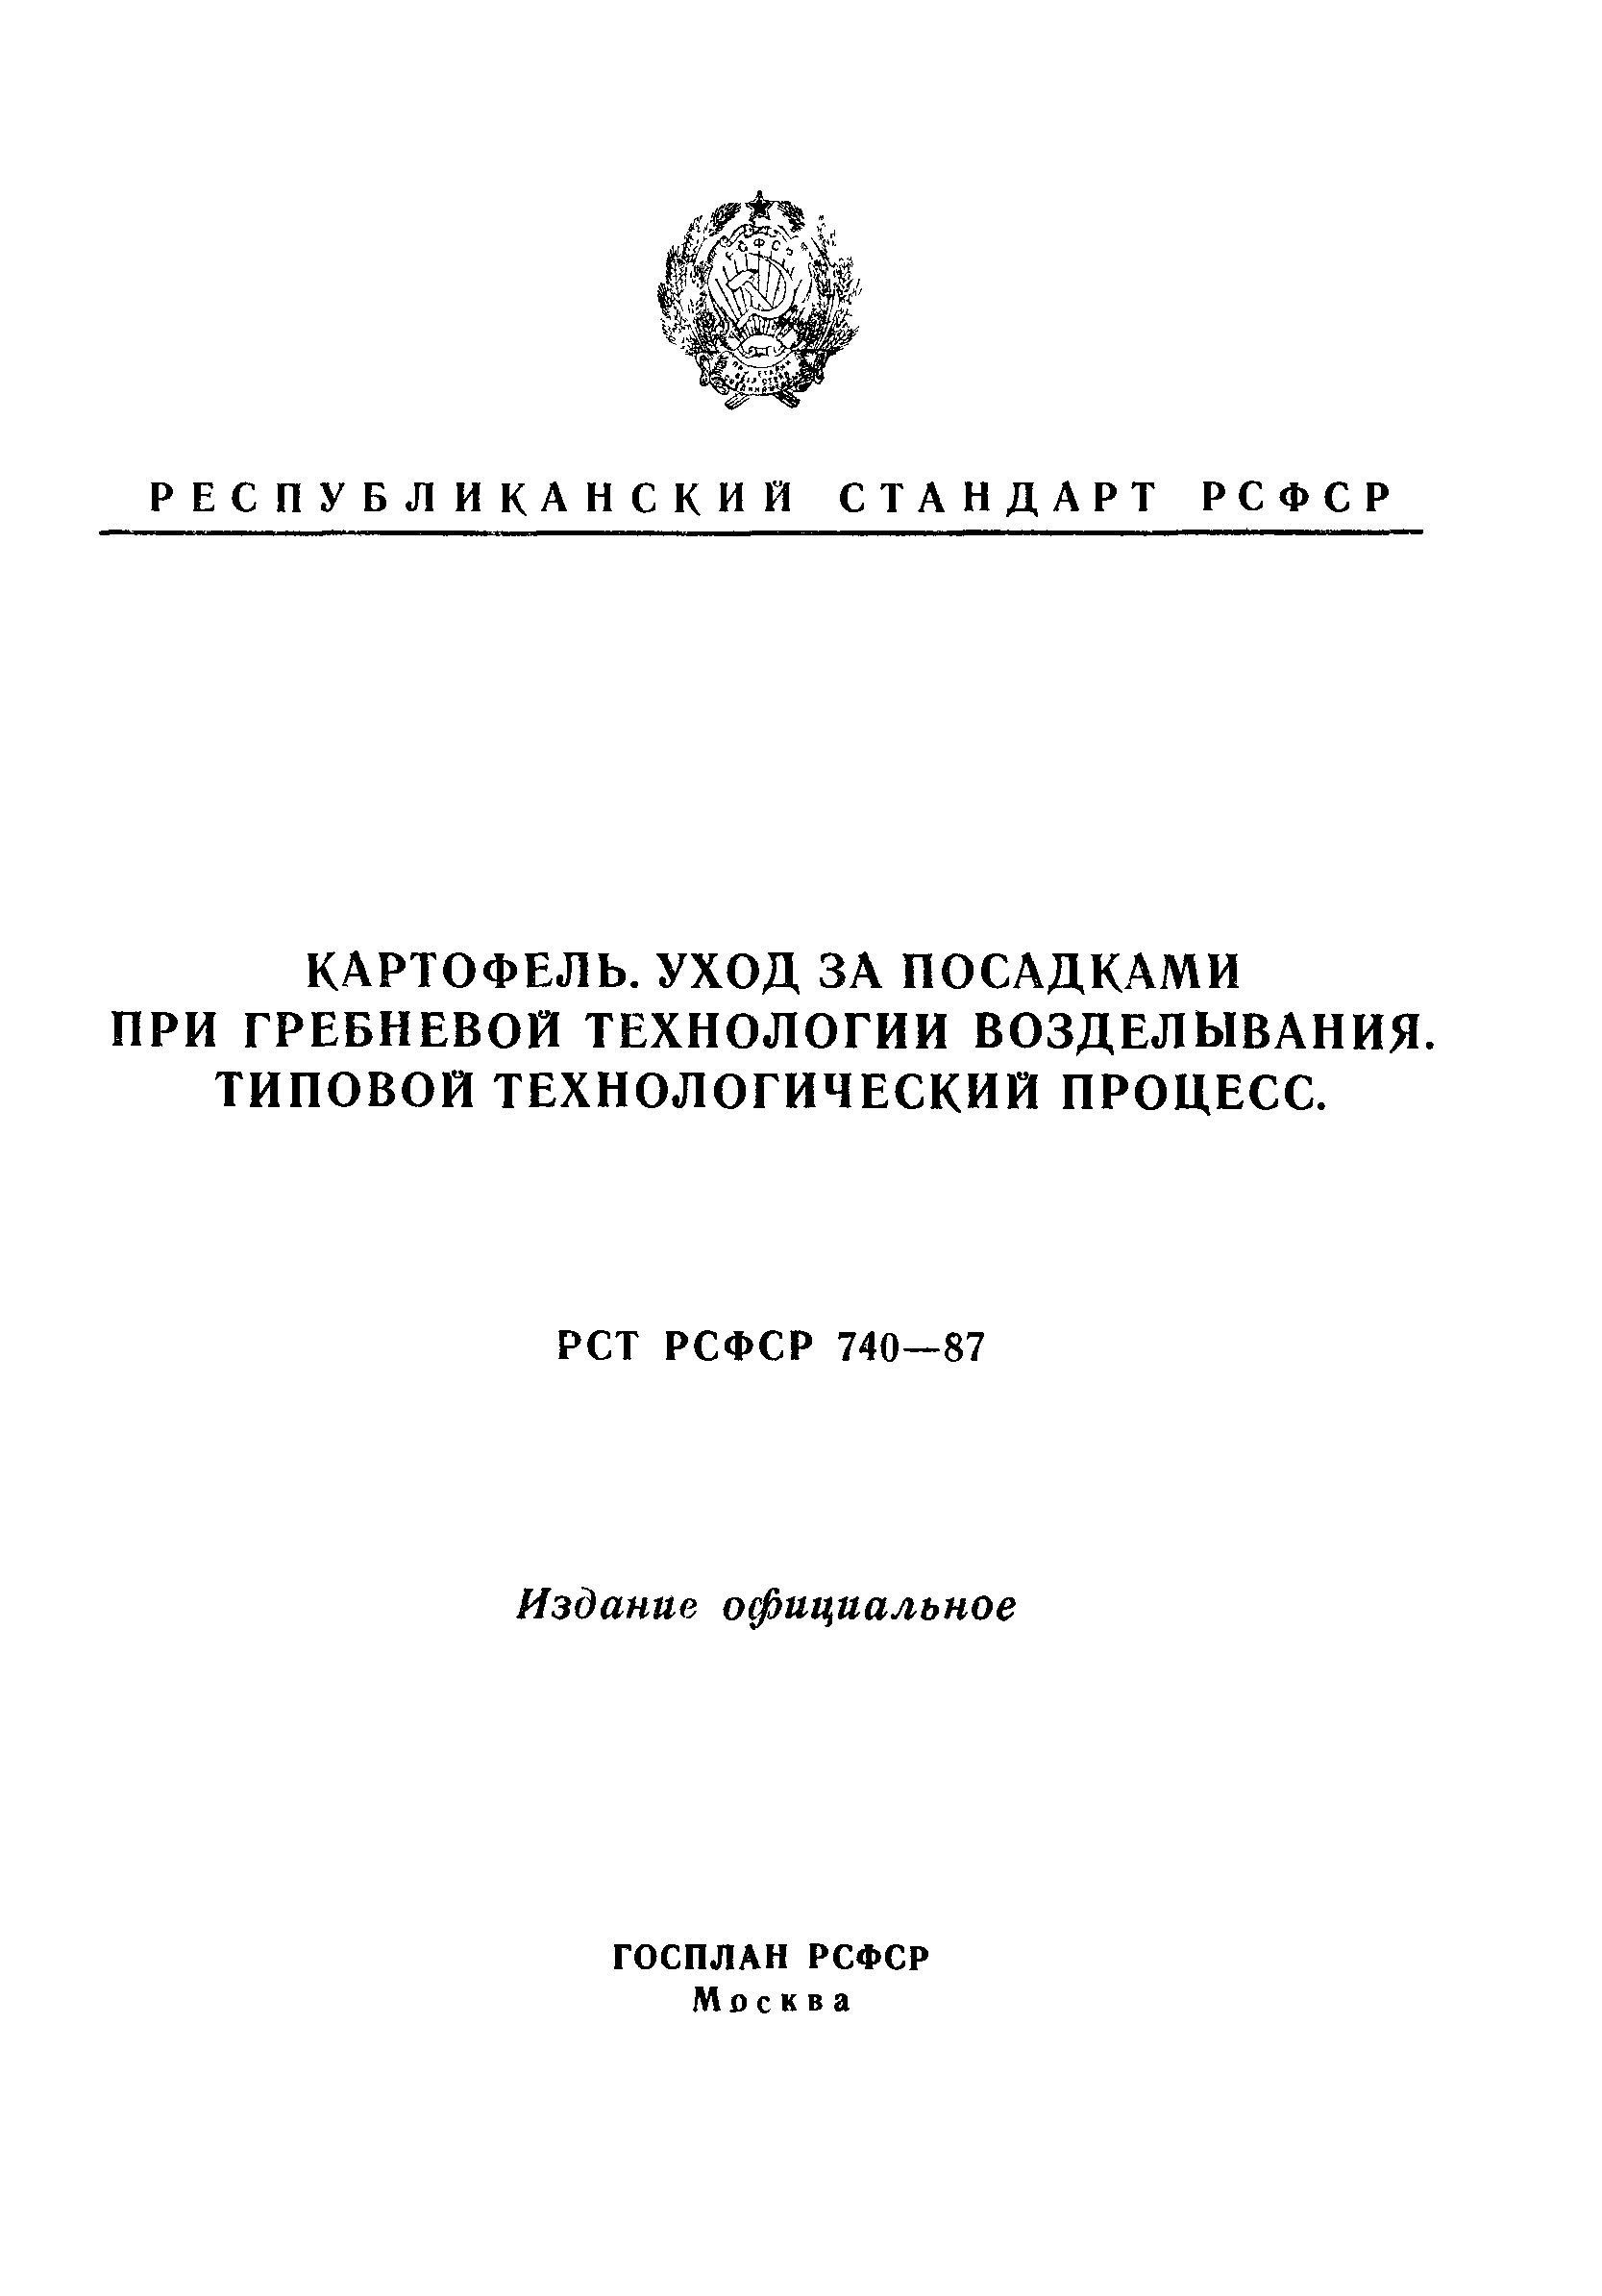 РСТ РСФСР 740-87